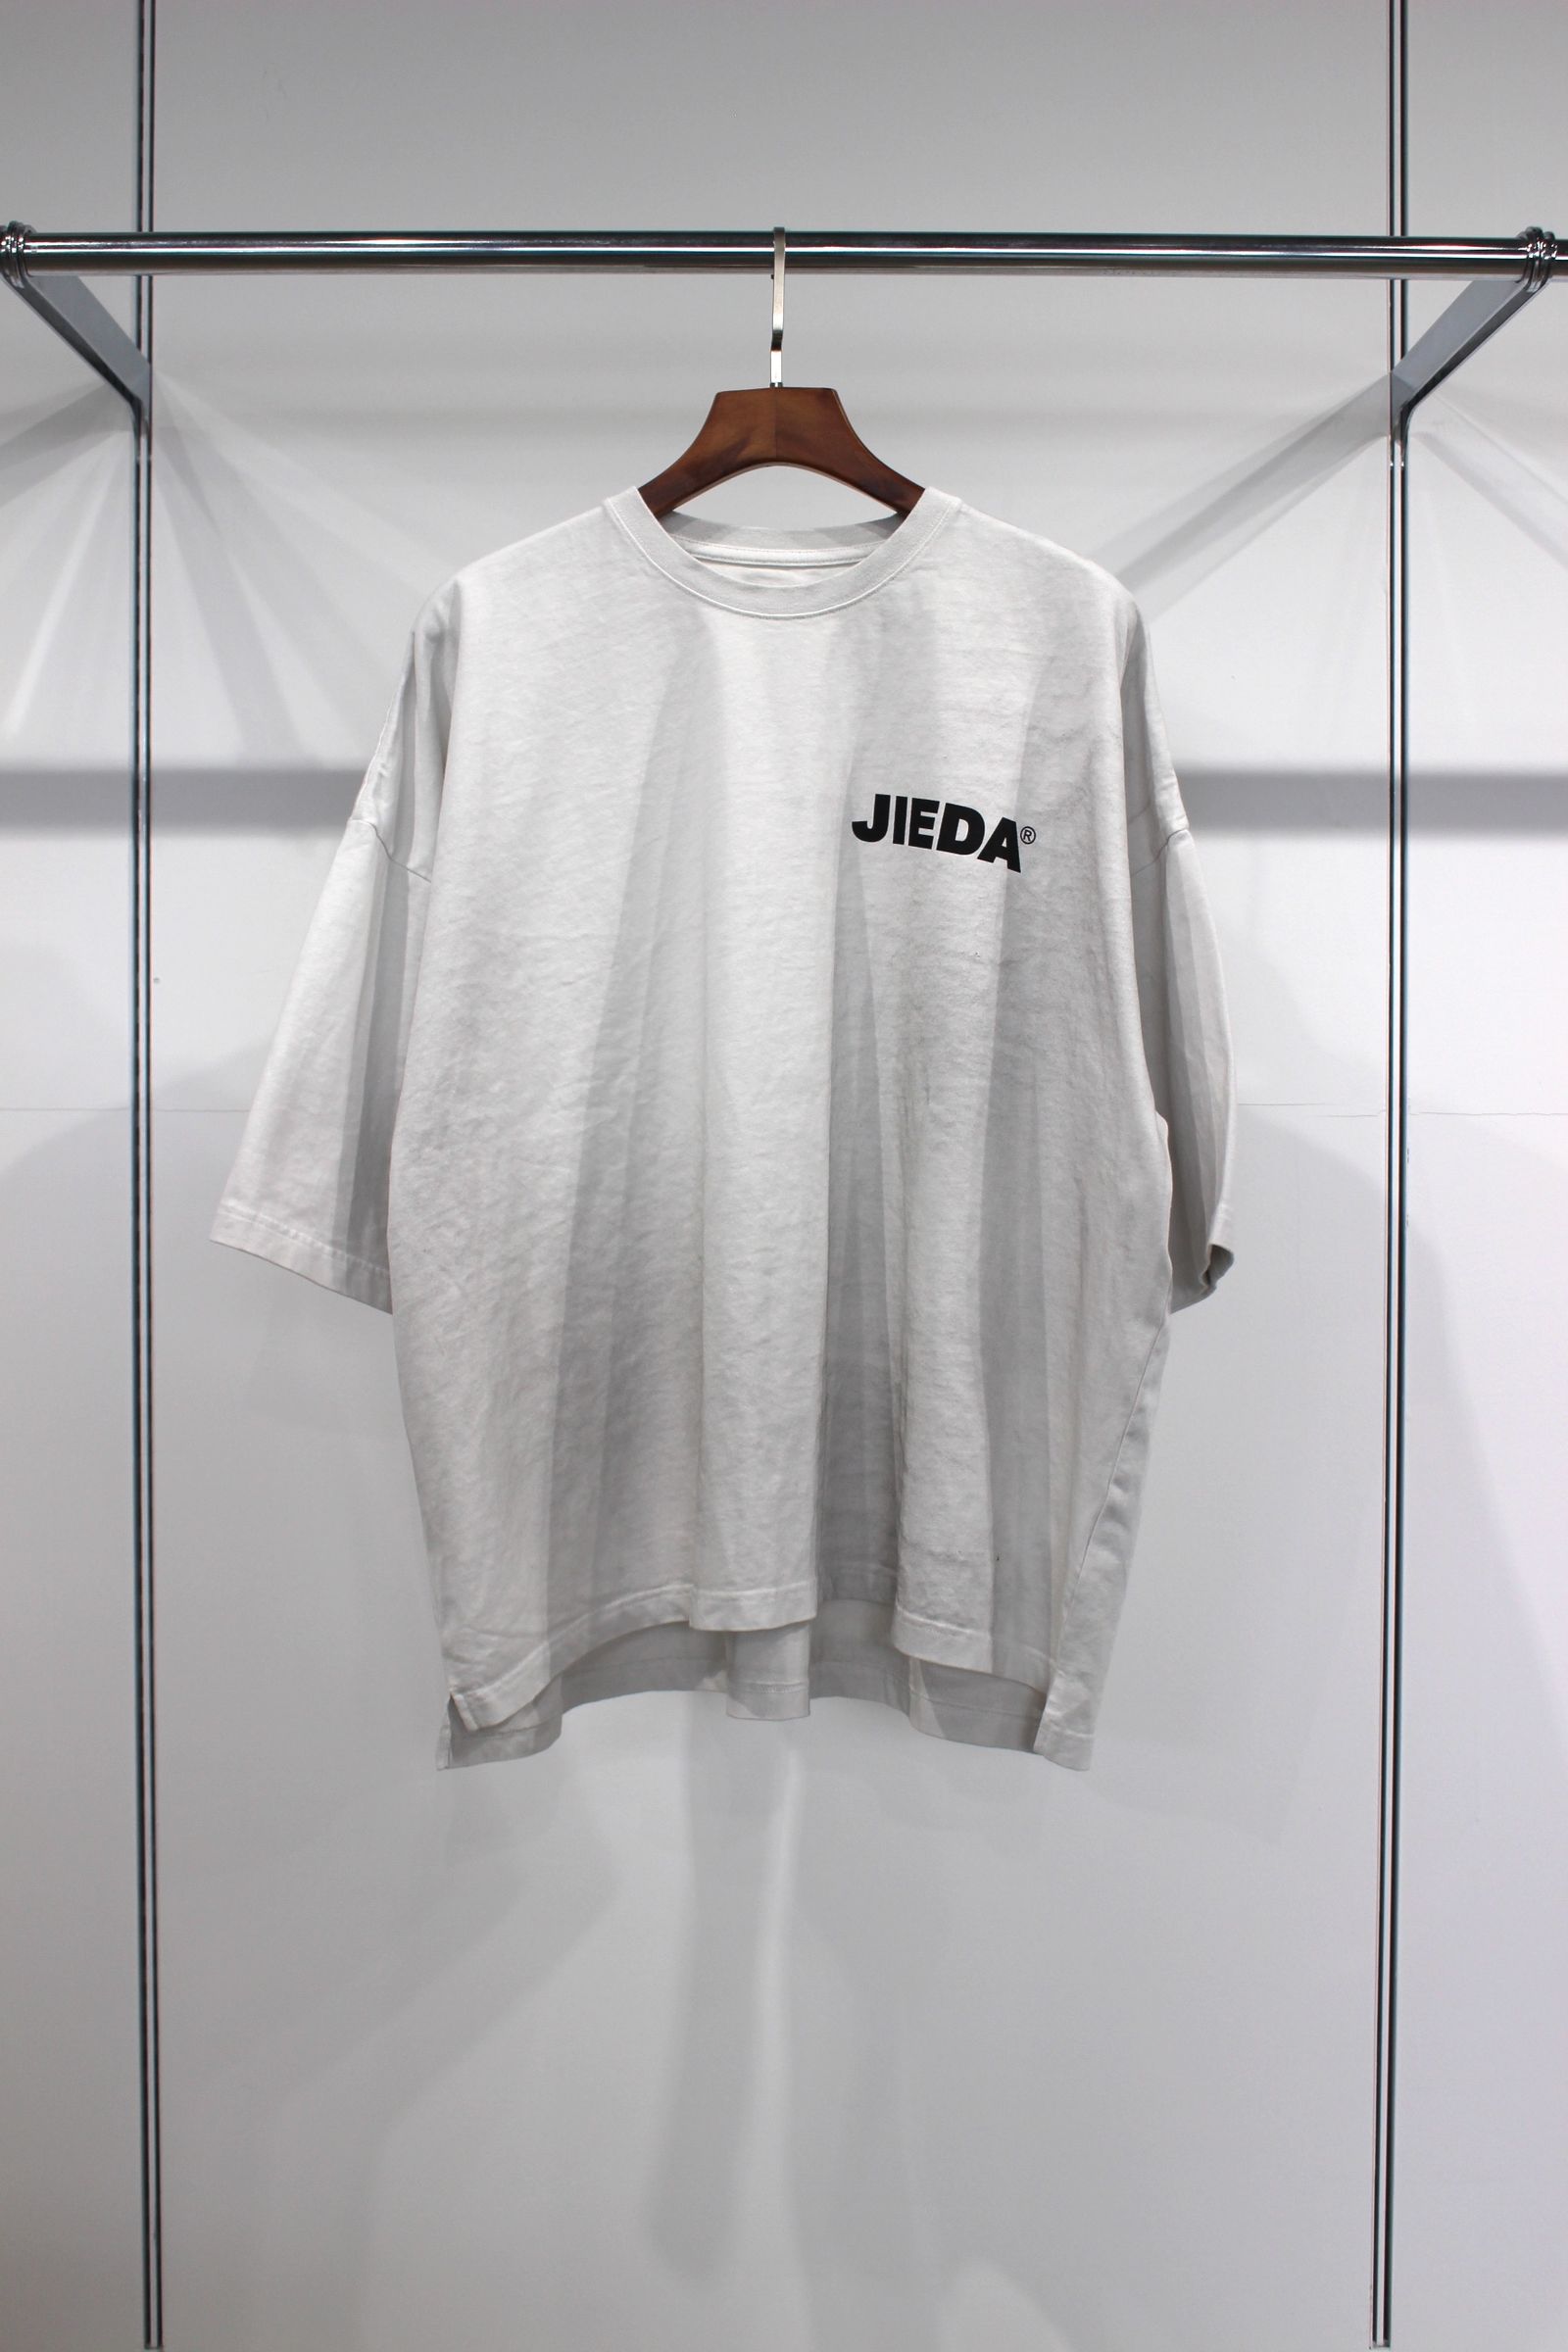 JieDa - JIEDA OVERSIZED TEE/オーバーサイズTシャツ/アイボリー